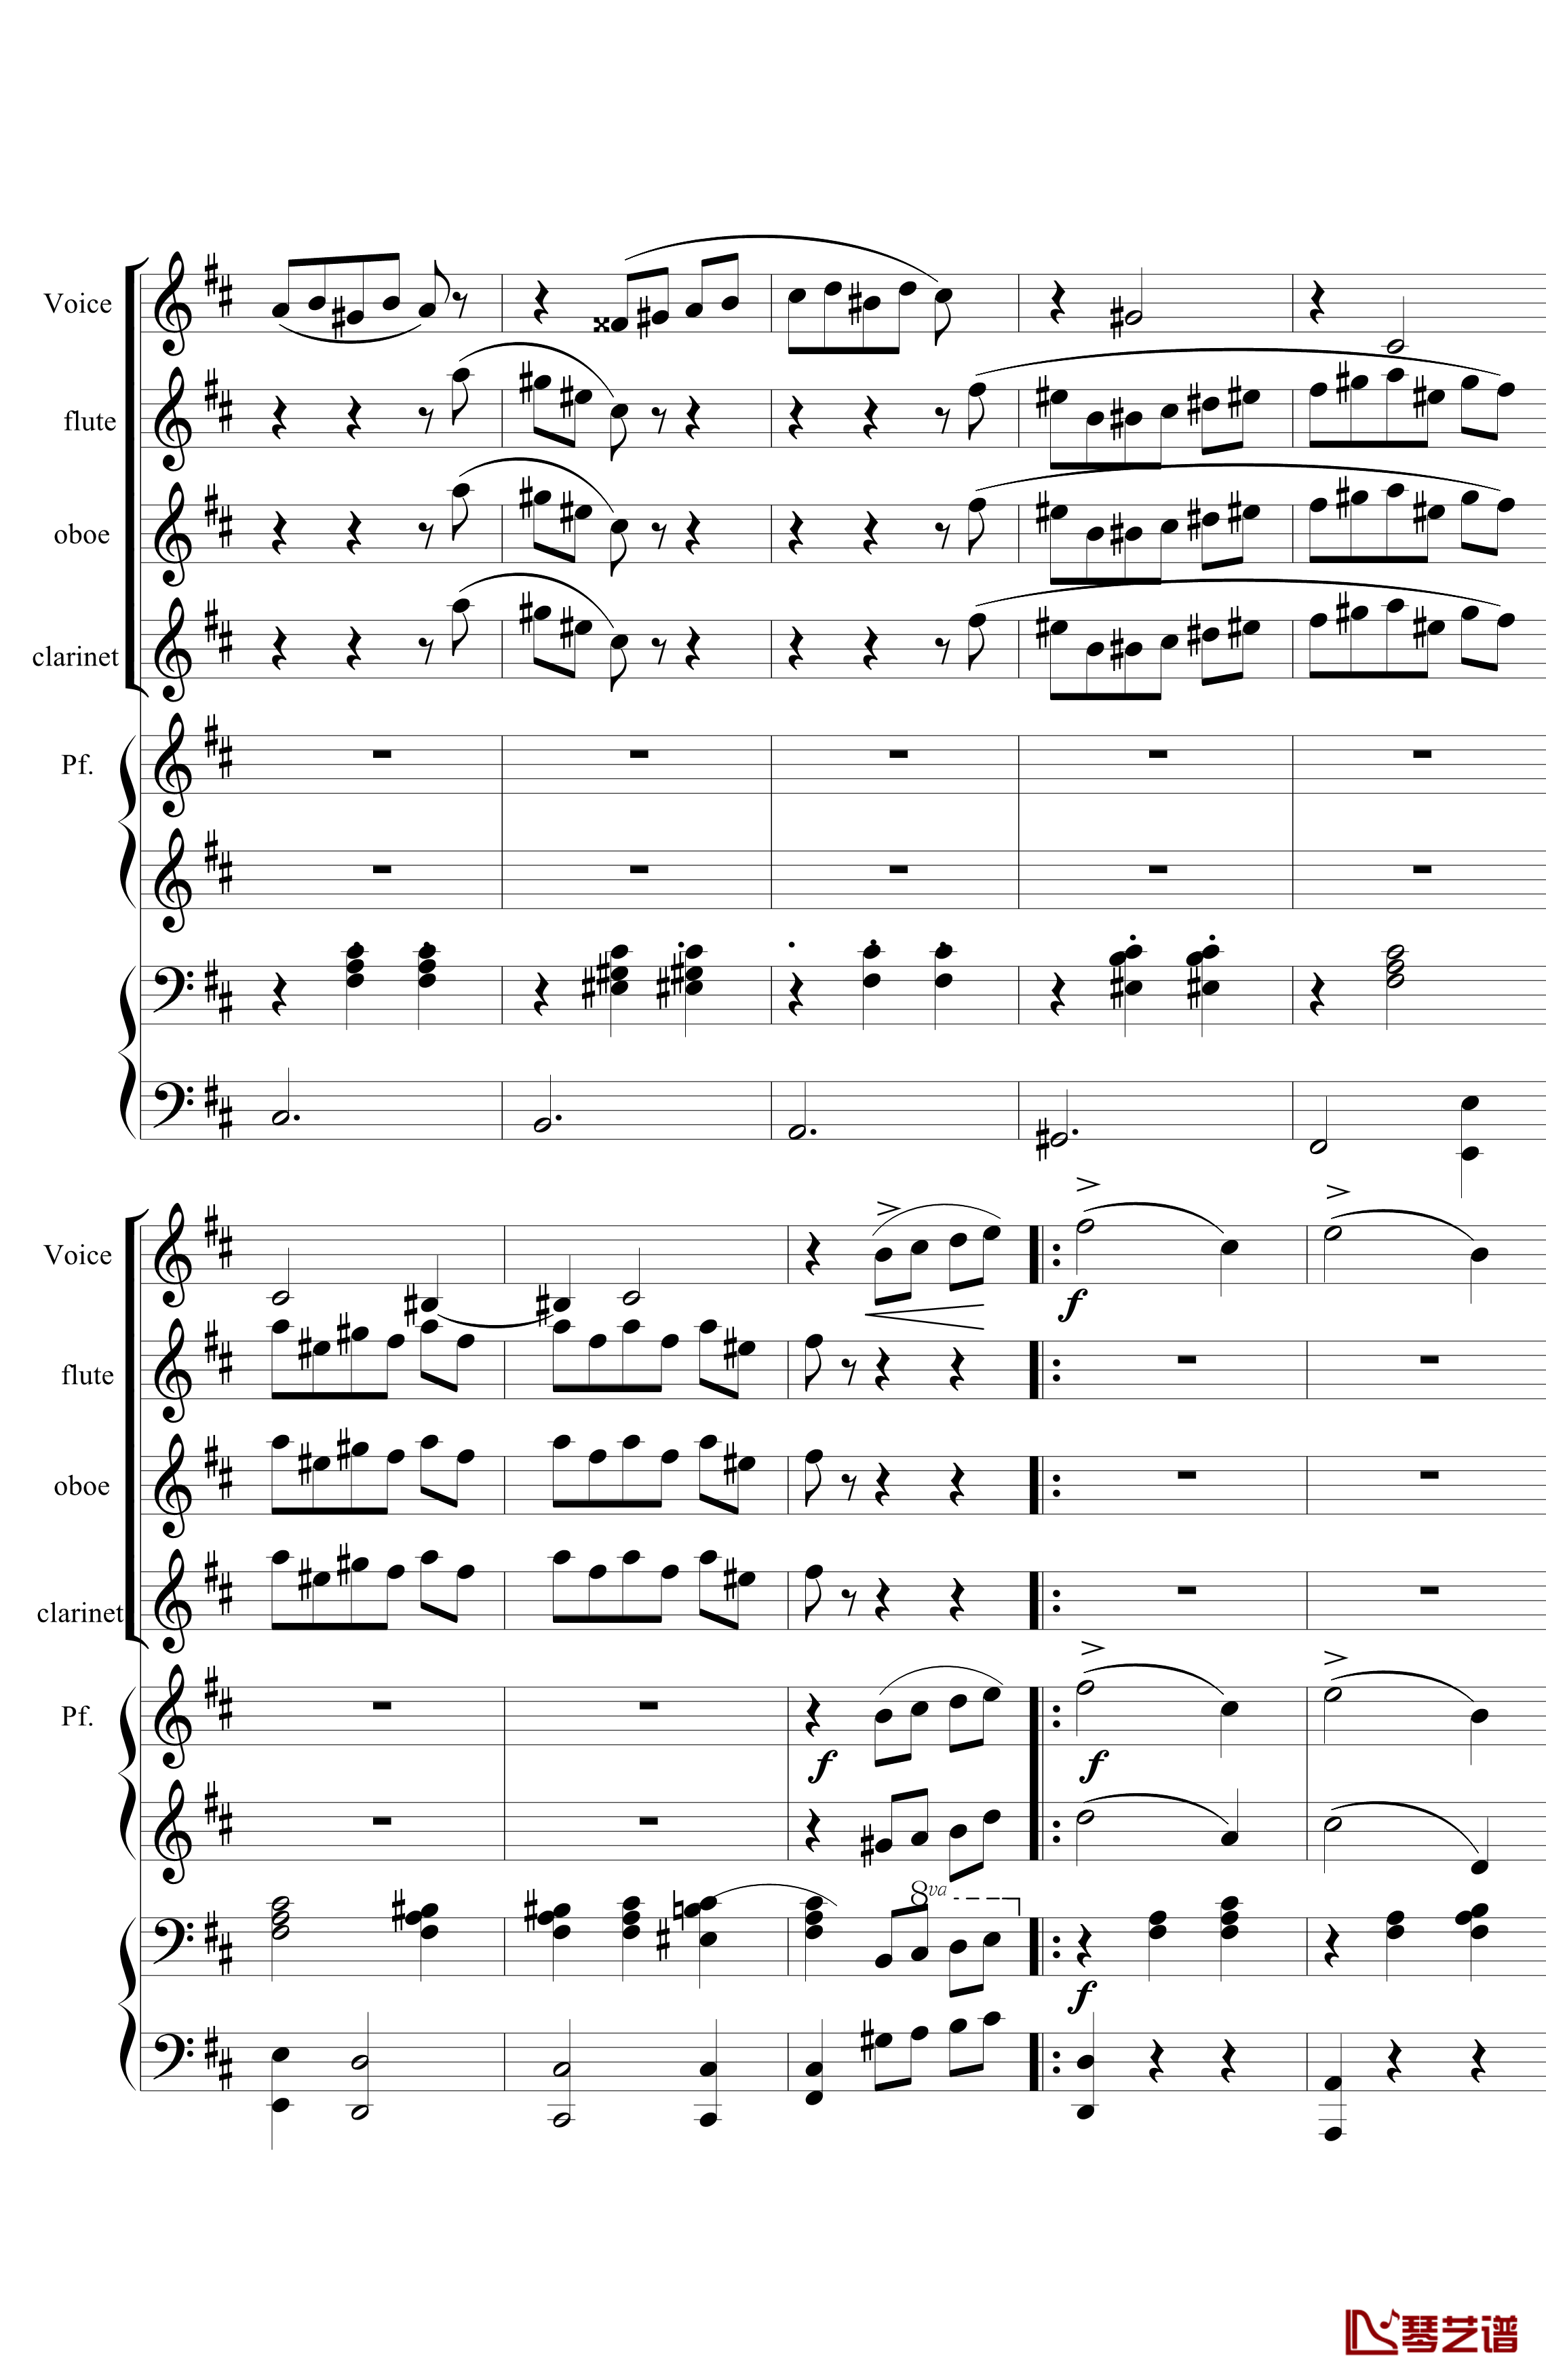 花之圆舞曲钢琴谱-室内乐-柴科夫斯基-Peter Ilyich Tchaikovsky20